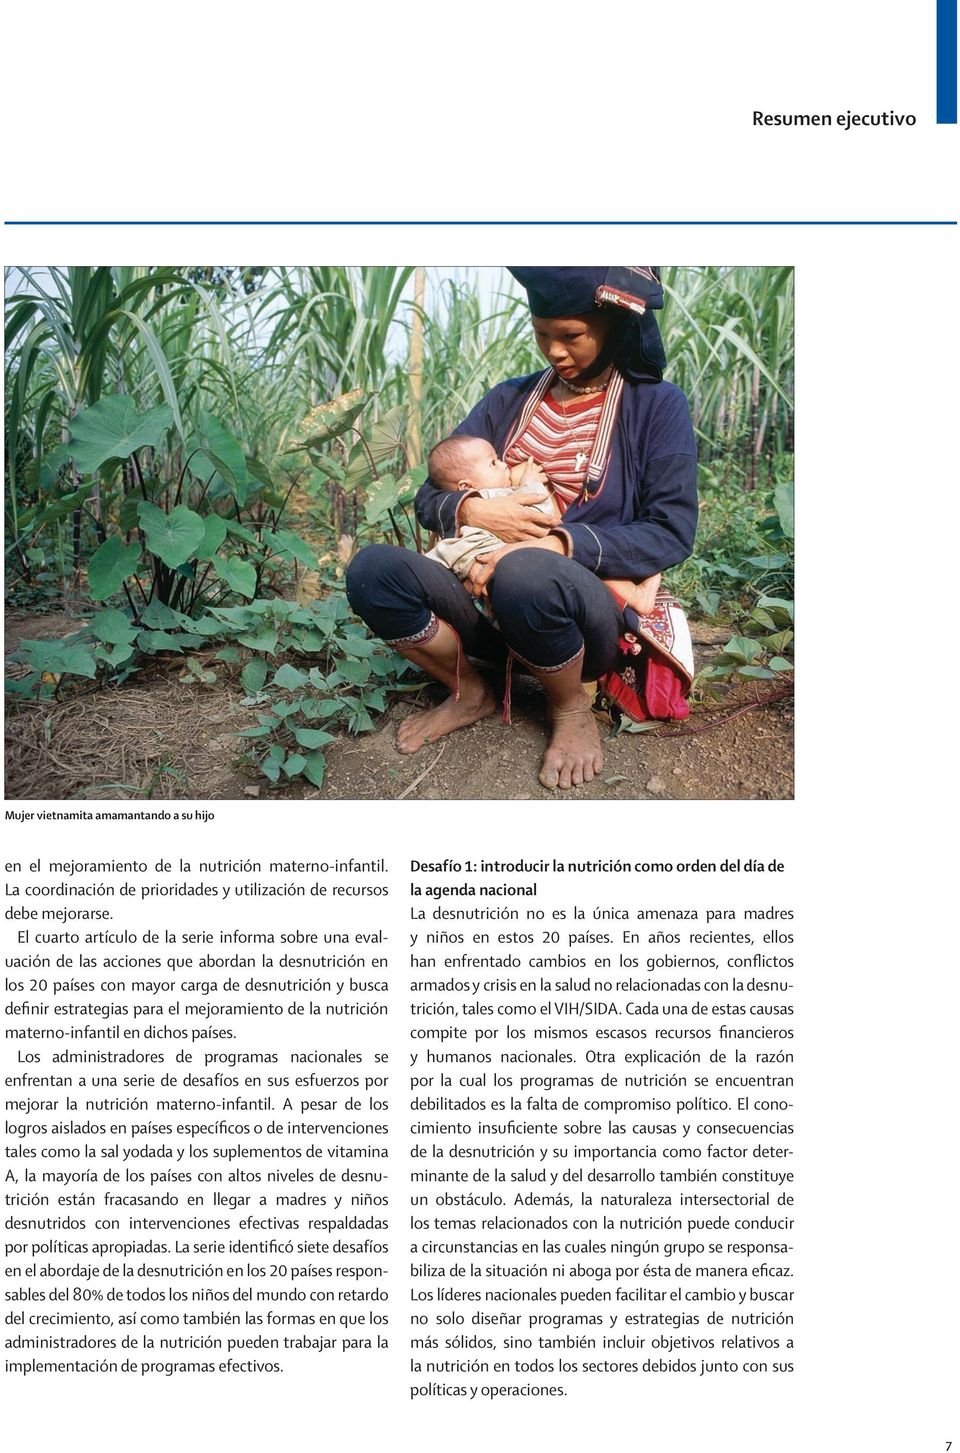 mejoramiento de la nutrición materno-infantil en dichos países.